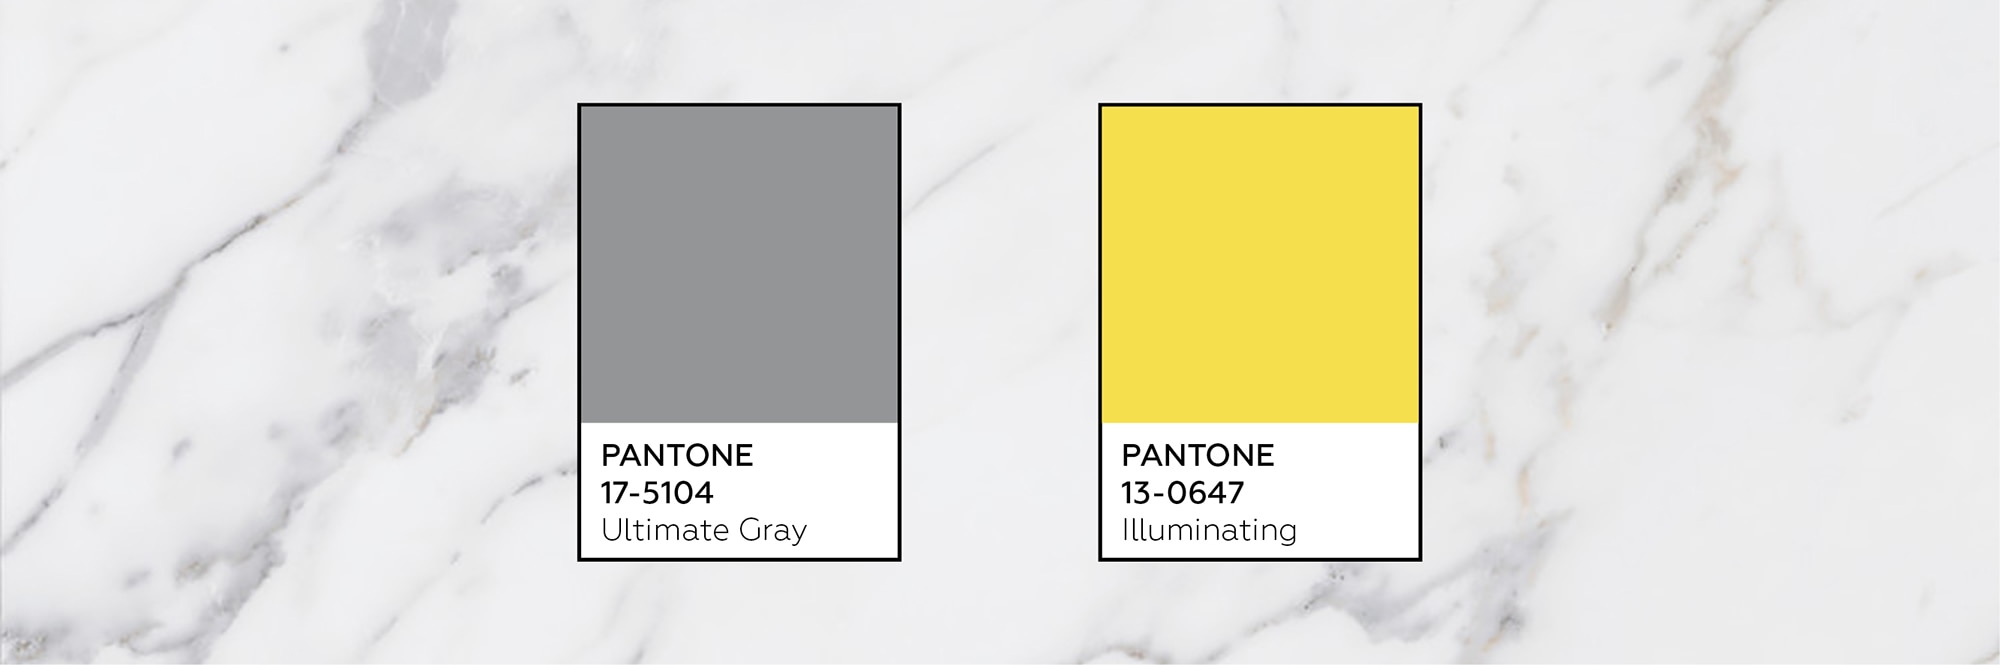 Pantone Colors of 2021 - Ultimate Gray pantone 17-5104 and Illuminating pantone 13-0647